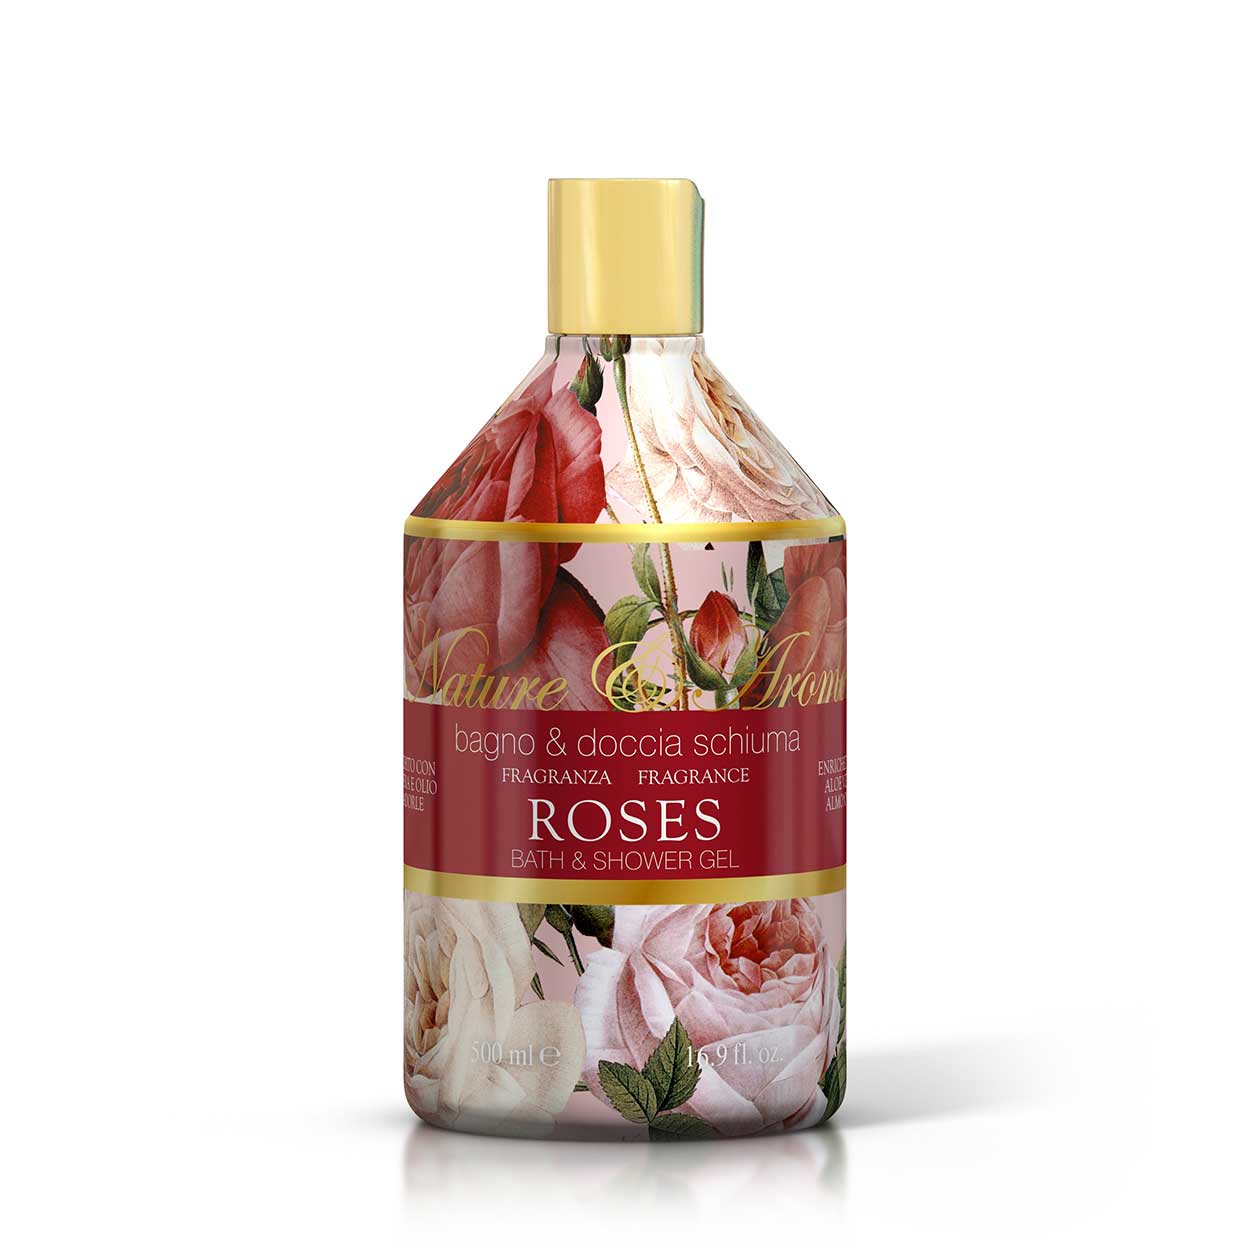 <b>Bagno docciaschiuma da 500 mL</b></br>Nature&Arome</br><i>Linea Roses</i>